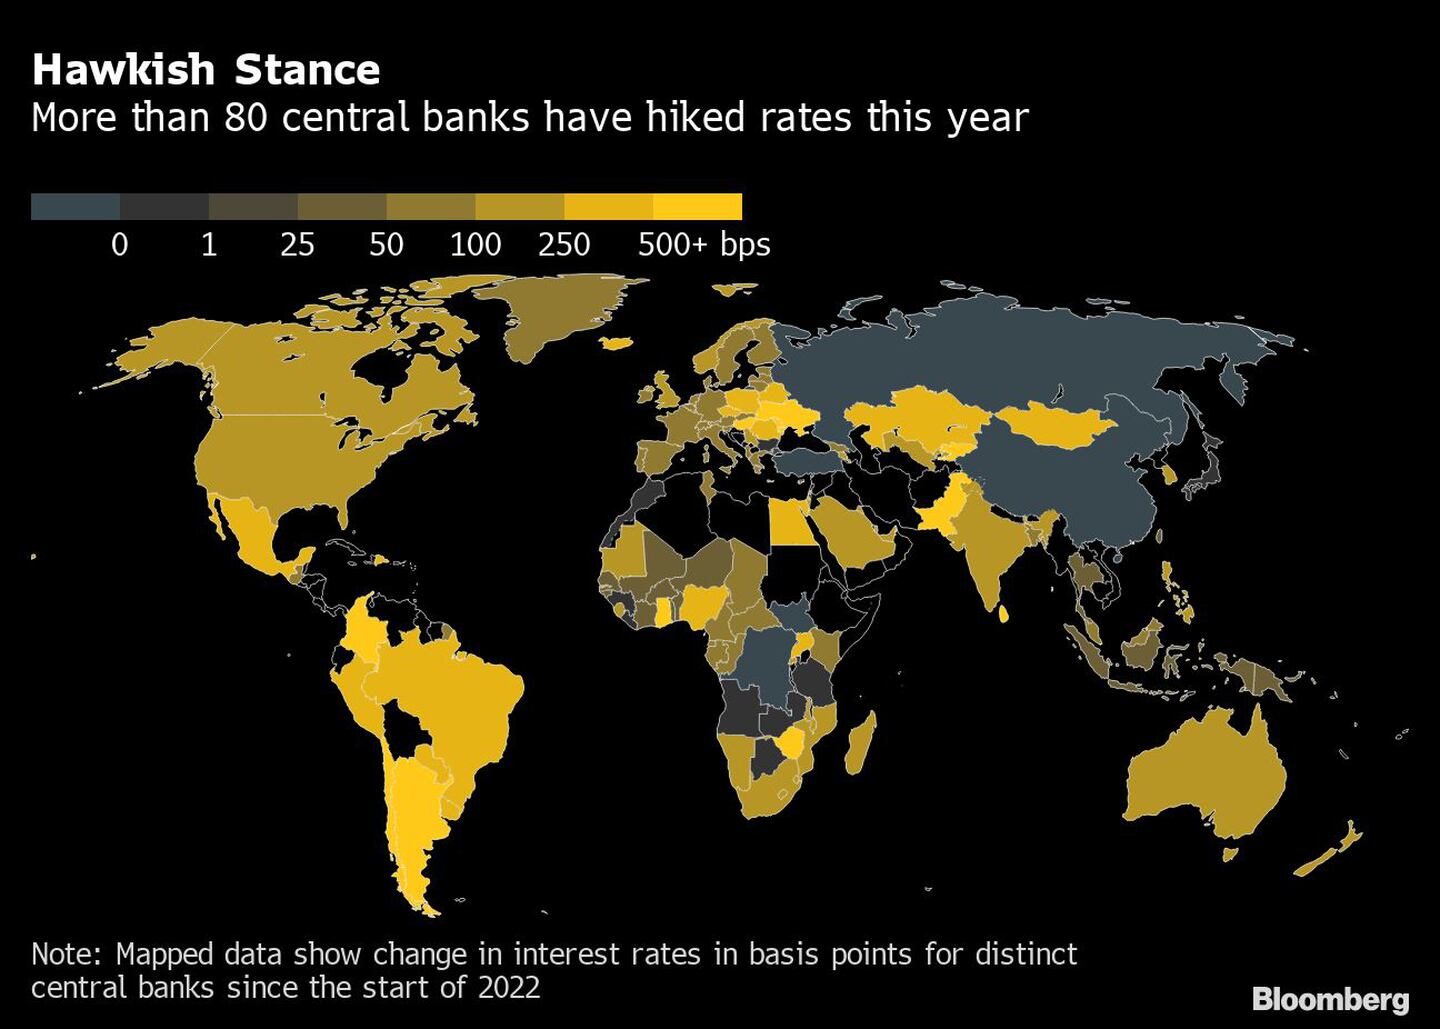 Postura agresiva | Más de 80 bancos centrales han subido los tipos este añodfd